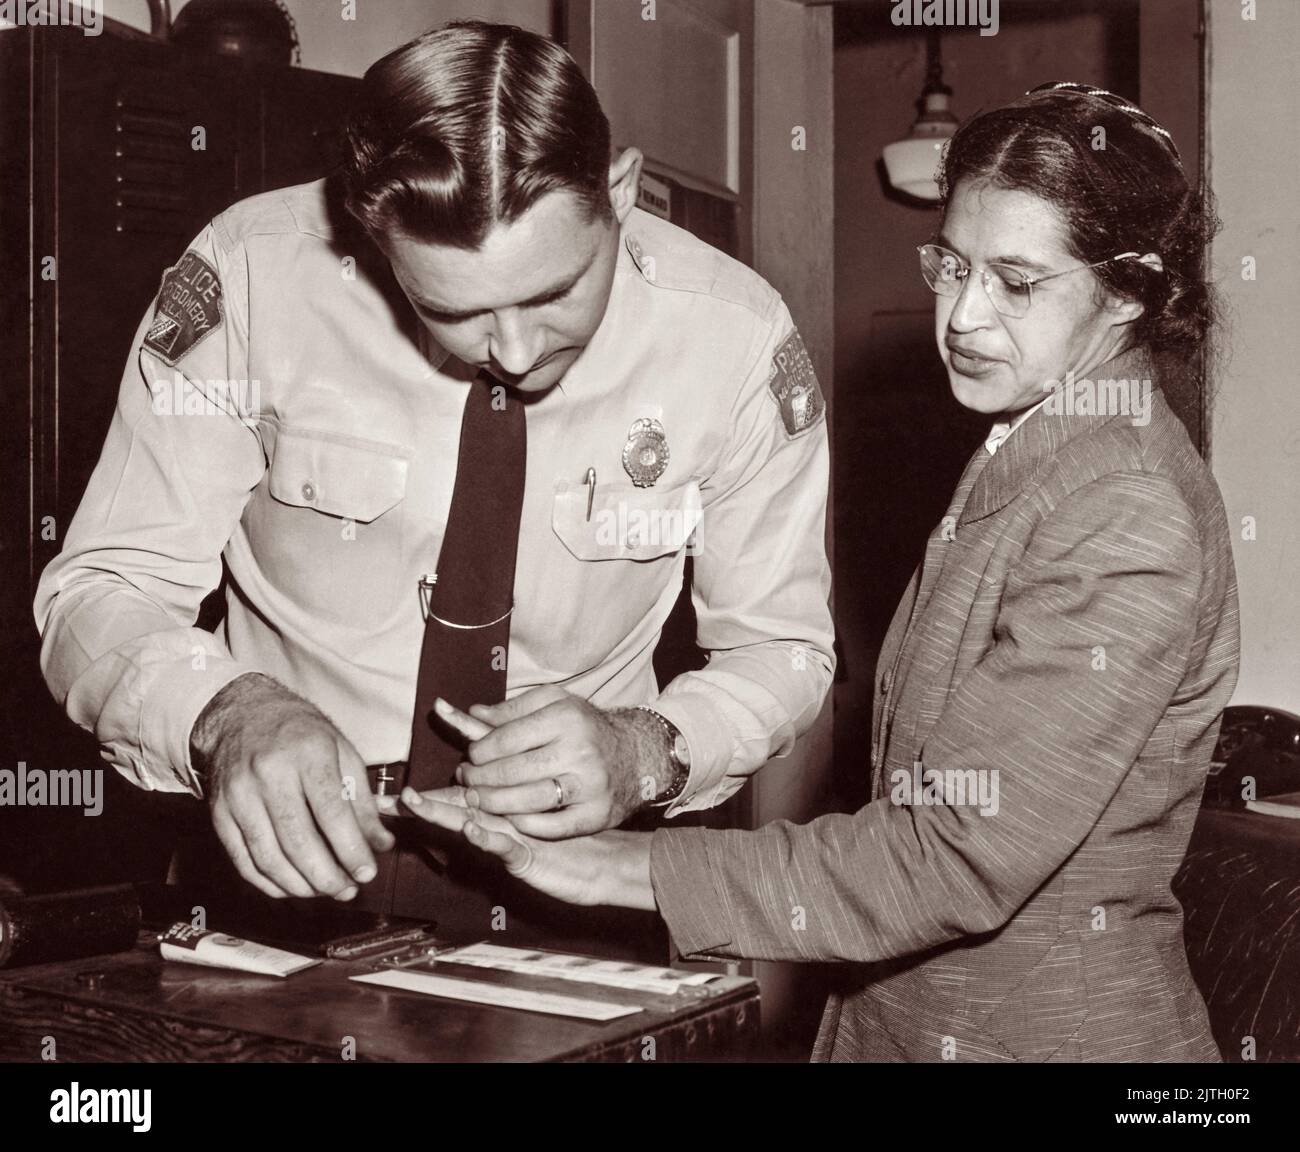 Rosa Parks étant empreintes digitales sur 22 février 1956, par le lieutenant D.H. Lackey comme l'un des gens inculpés comme dirigeants du boycott de bus de Montgomery. Elle était l'une des 73 personnes arrondies par des députés ce jour-là, après qu'un grand jury ait accusé 113 Afro-Américains d'avoir organisé le boycott. Quelques mois après son arrestation à 1 décembre 1955, pour avoir refusé de céder son siège à un passager blanc dans un autobus municipal séparé à Montgomery, Alabama. Banque D'Images